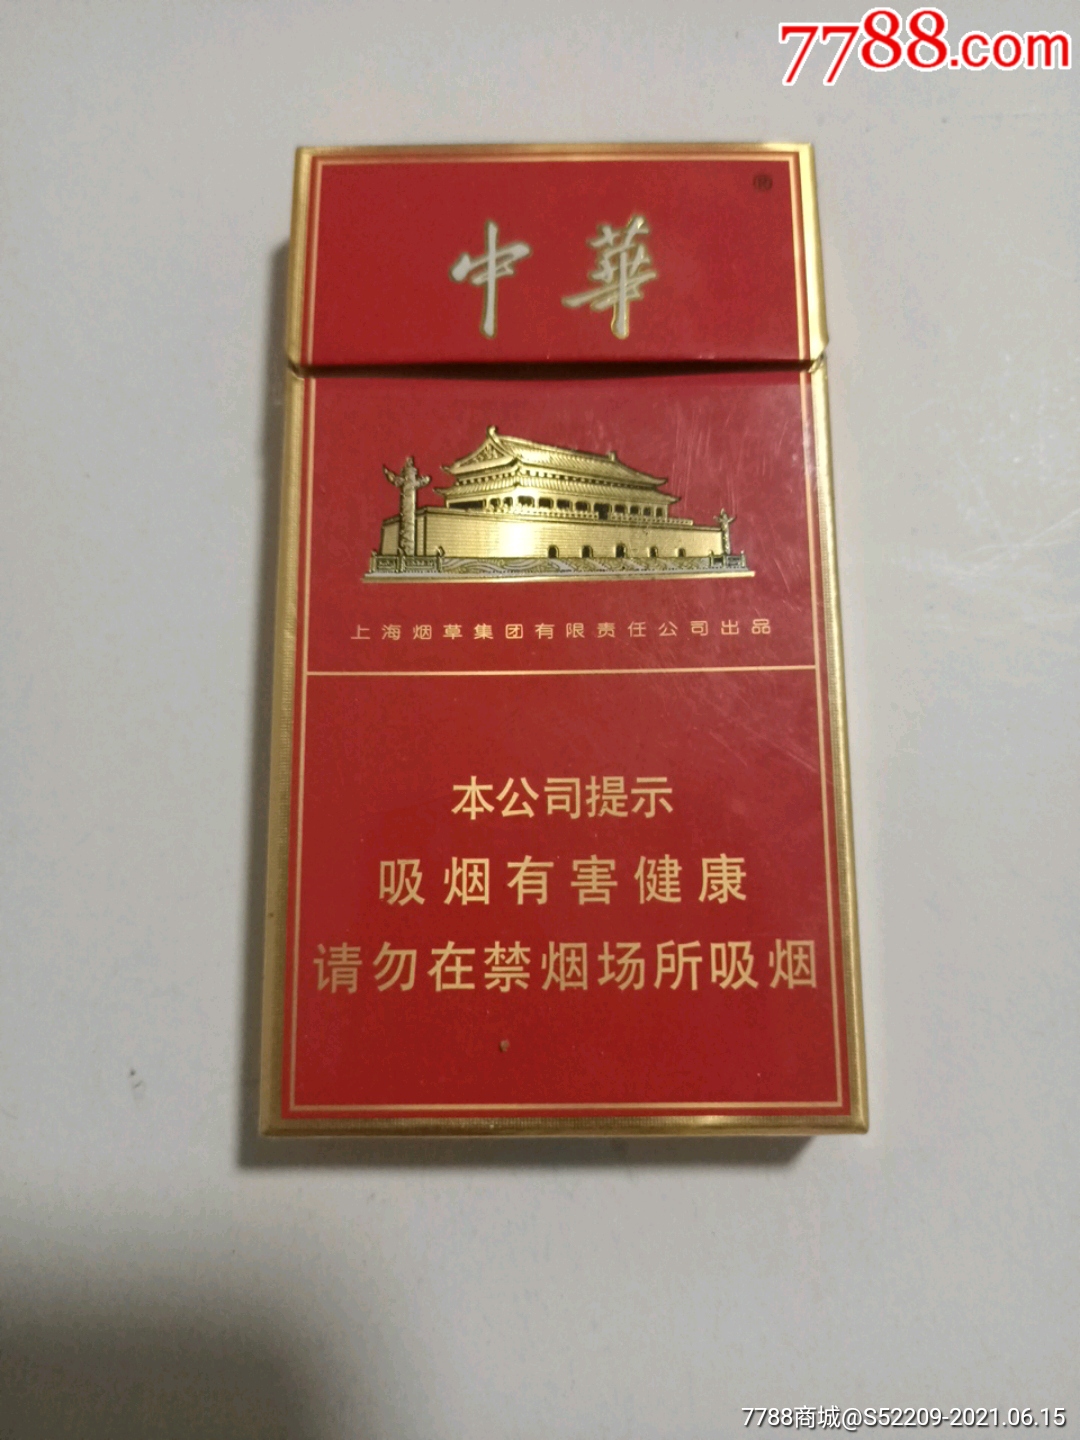 中华细支香烟多少钱一条 中华细支香烟最新价格表